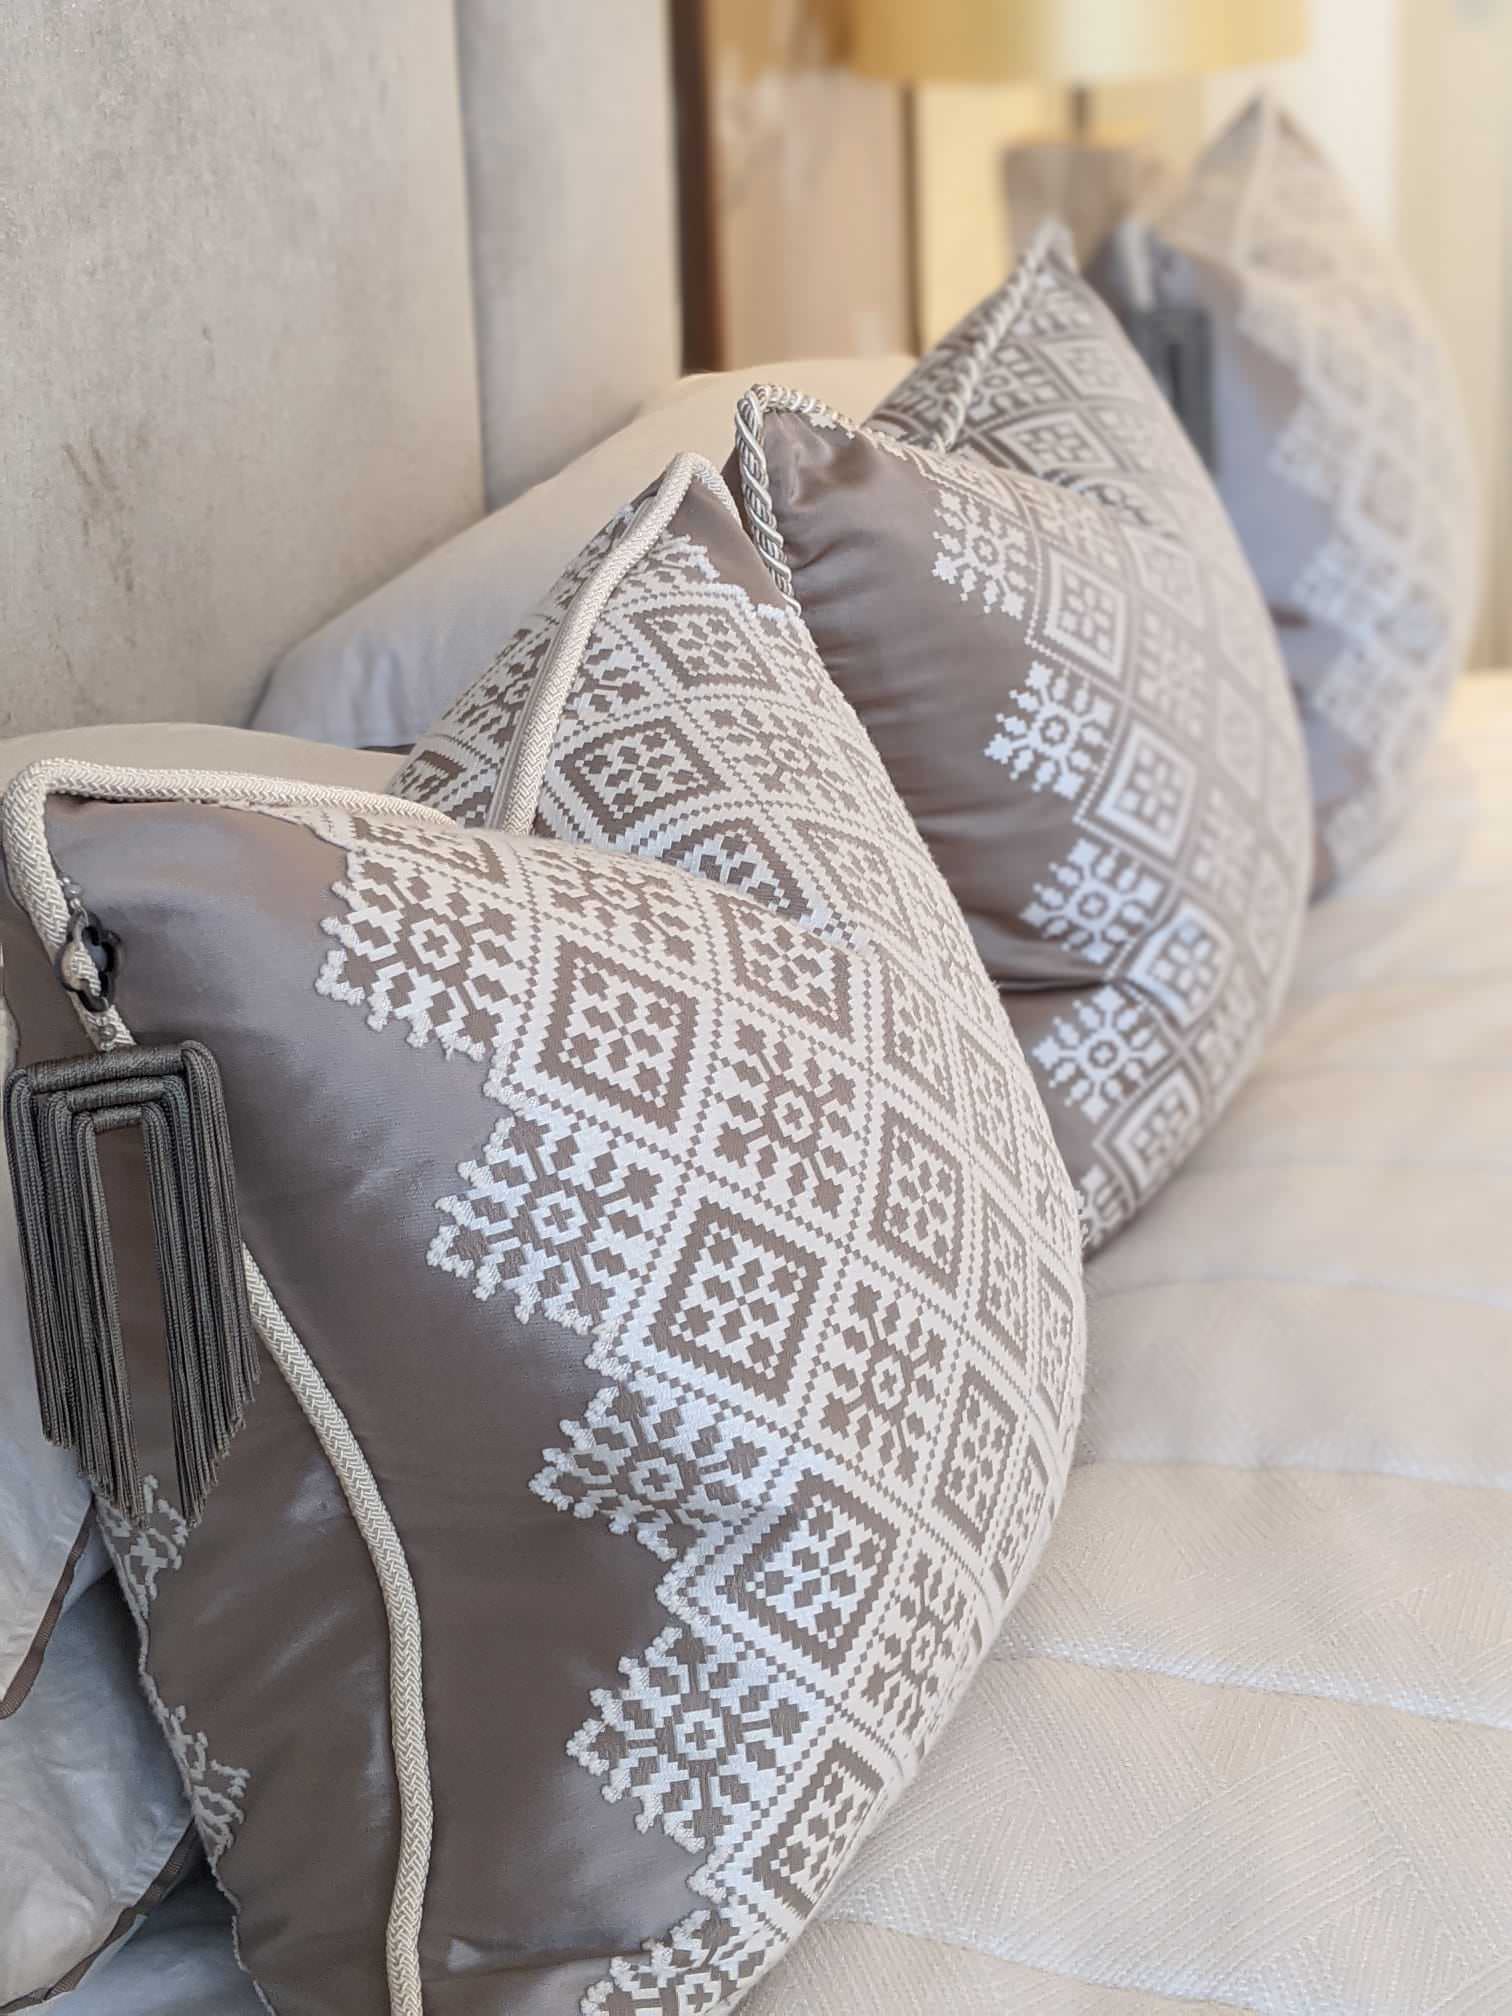 Bespoke Larsen cushions